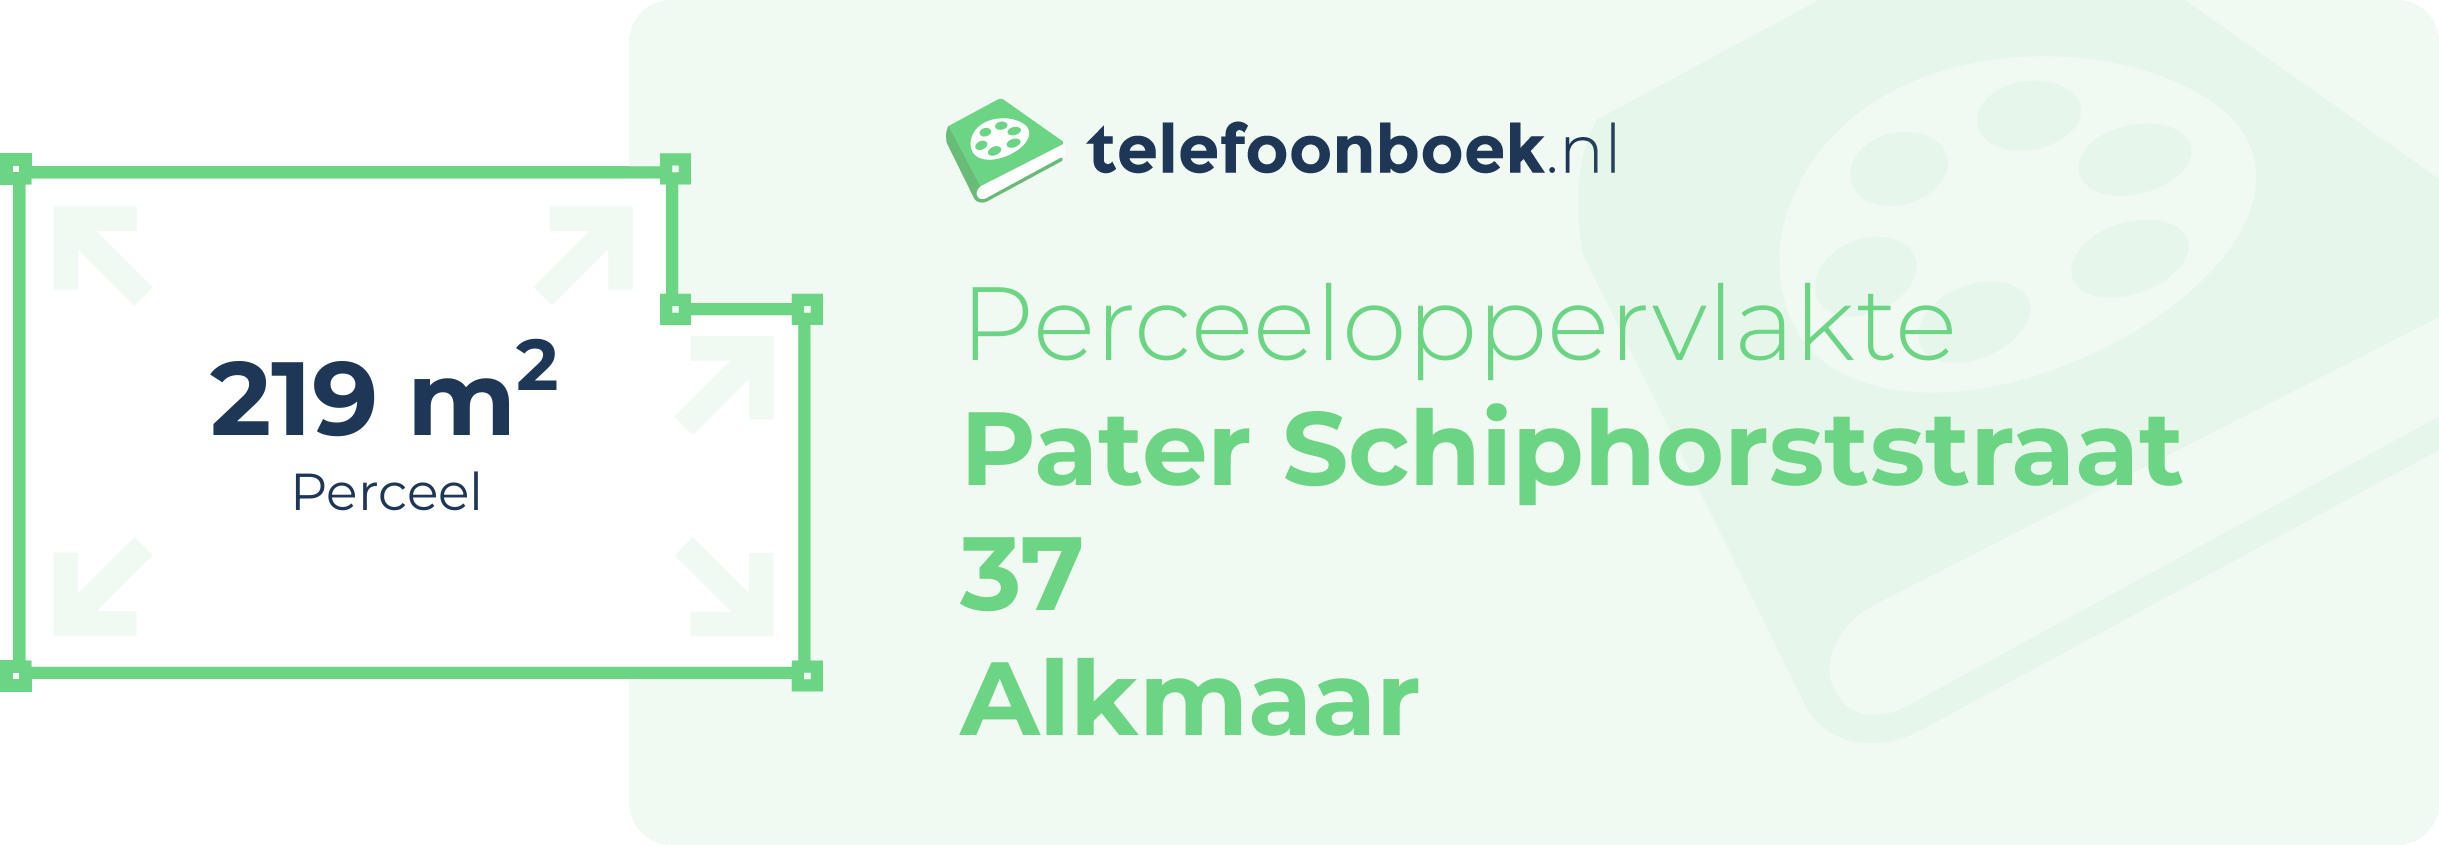 Perceeloppervlakte Pater Schiphorststraat 37 Alkmaar